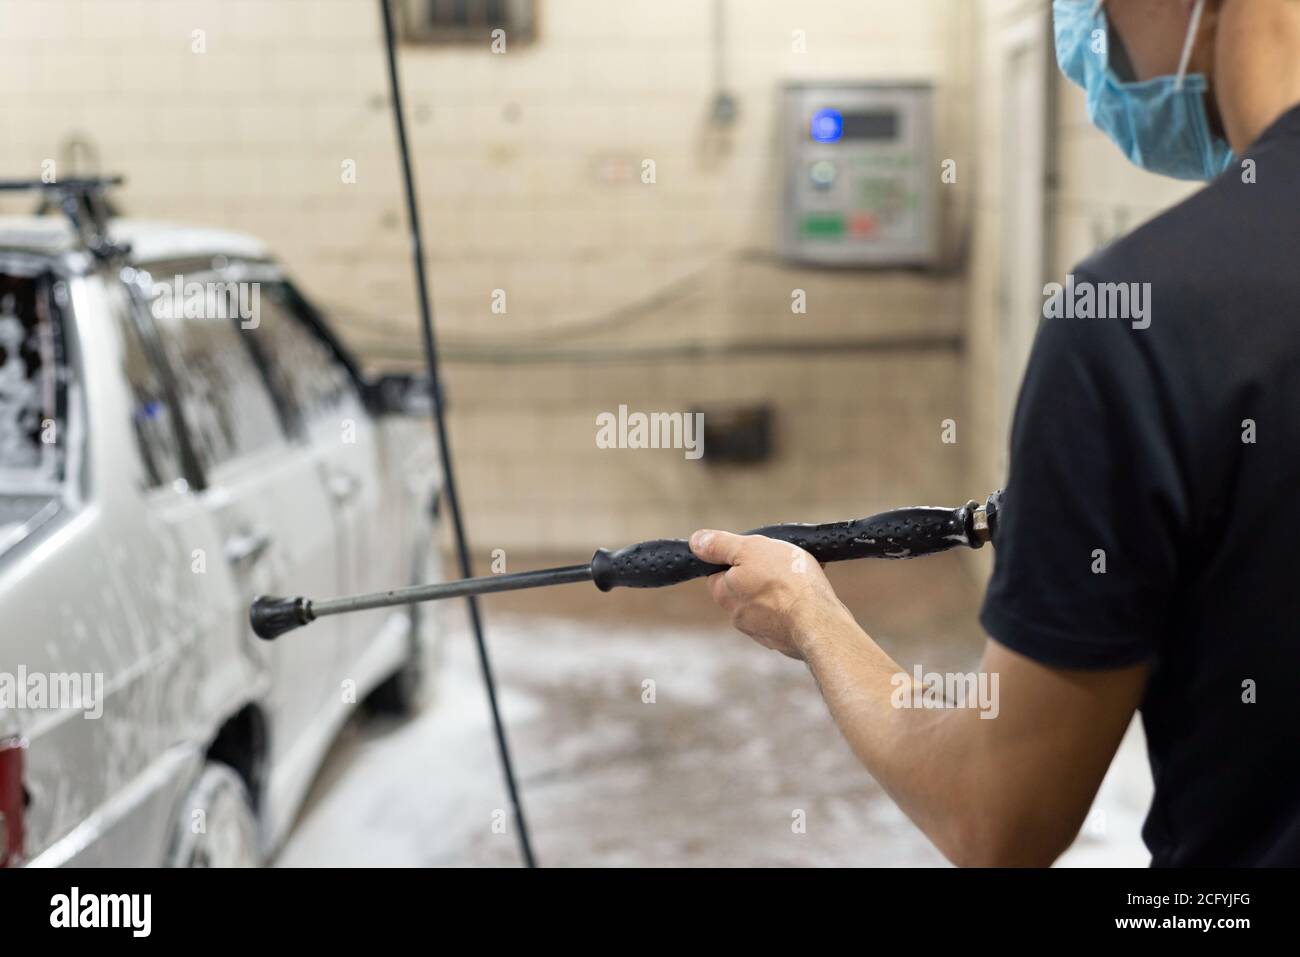 coronavirus pulizia della macchina, lavando la carrozzeria con un pulitore da soluzione di sapone. Il lavoro di tecnici automatici durante il periodo di quarantena COV Foto Stock